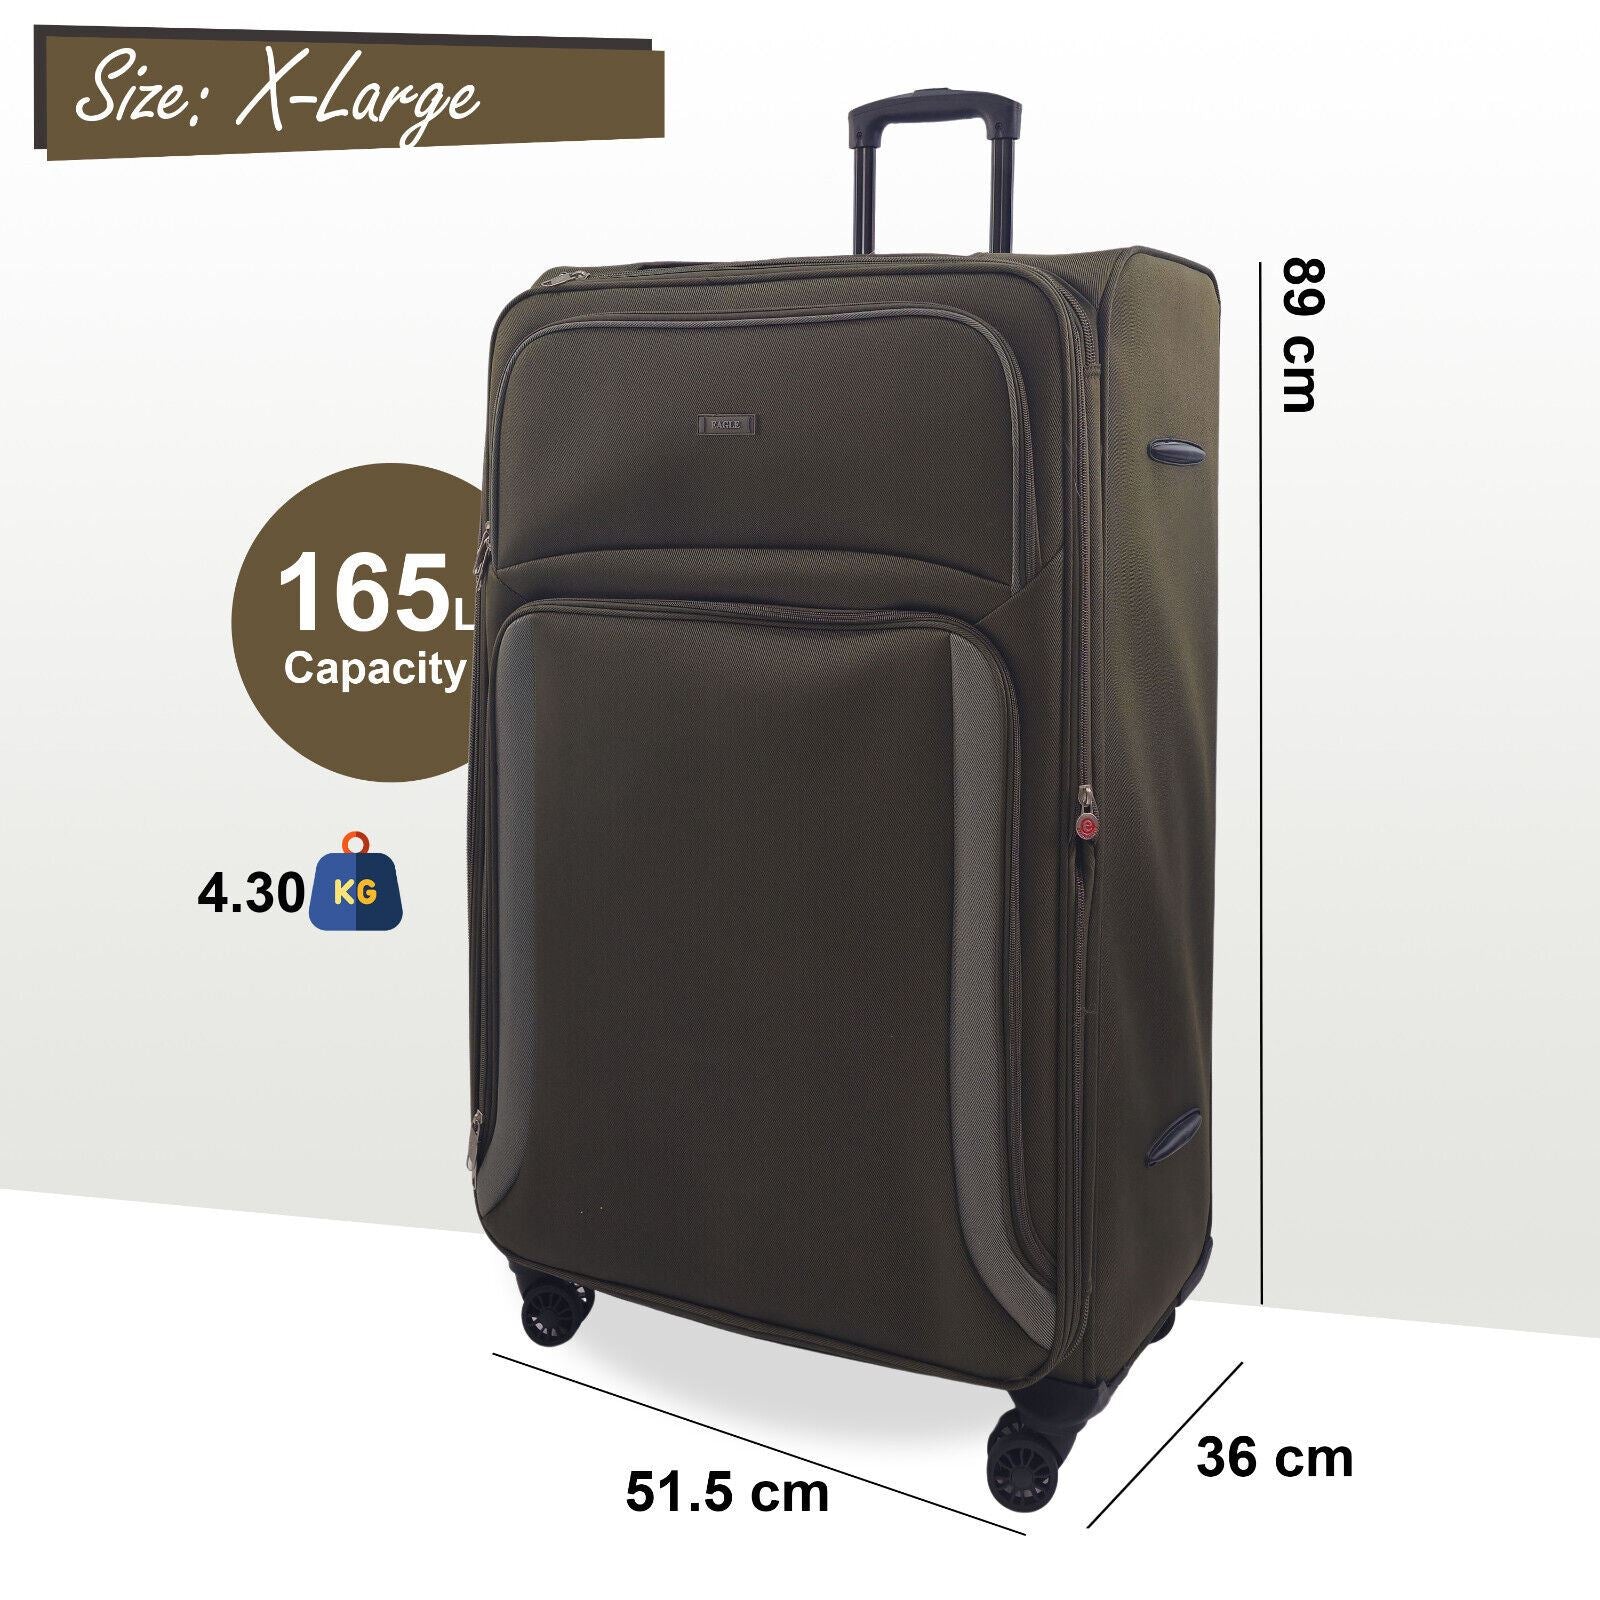 Ashland Extra Large Soft Shell Suitcase in Khaki